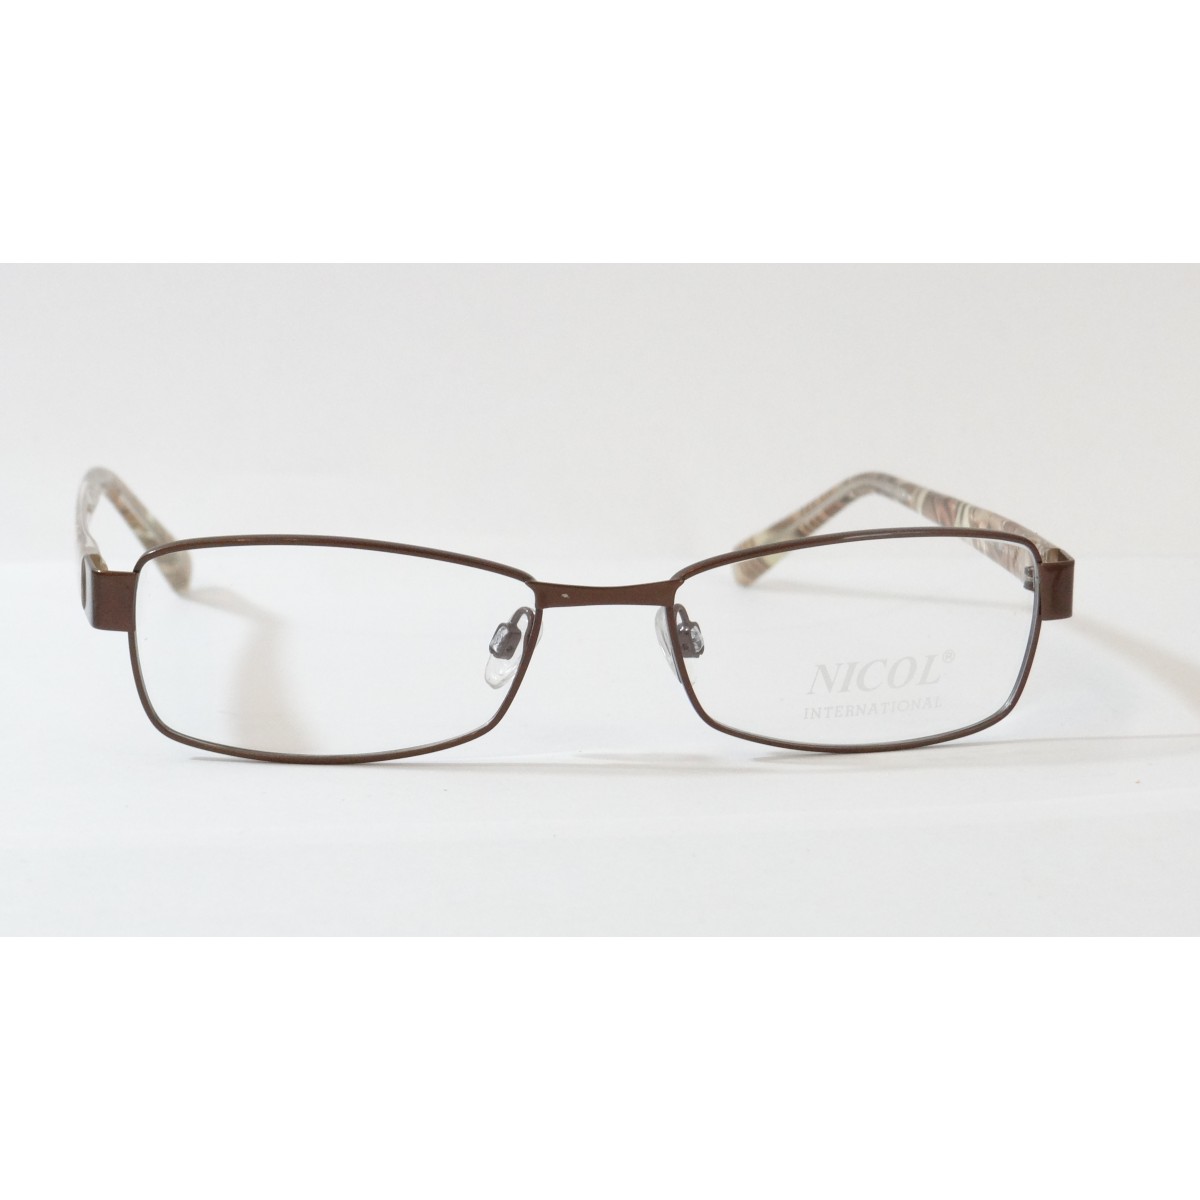 Rame de ochelari Nicol 6033